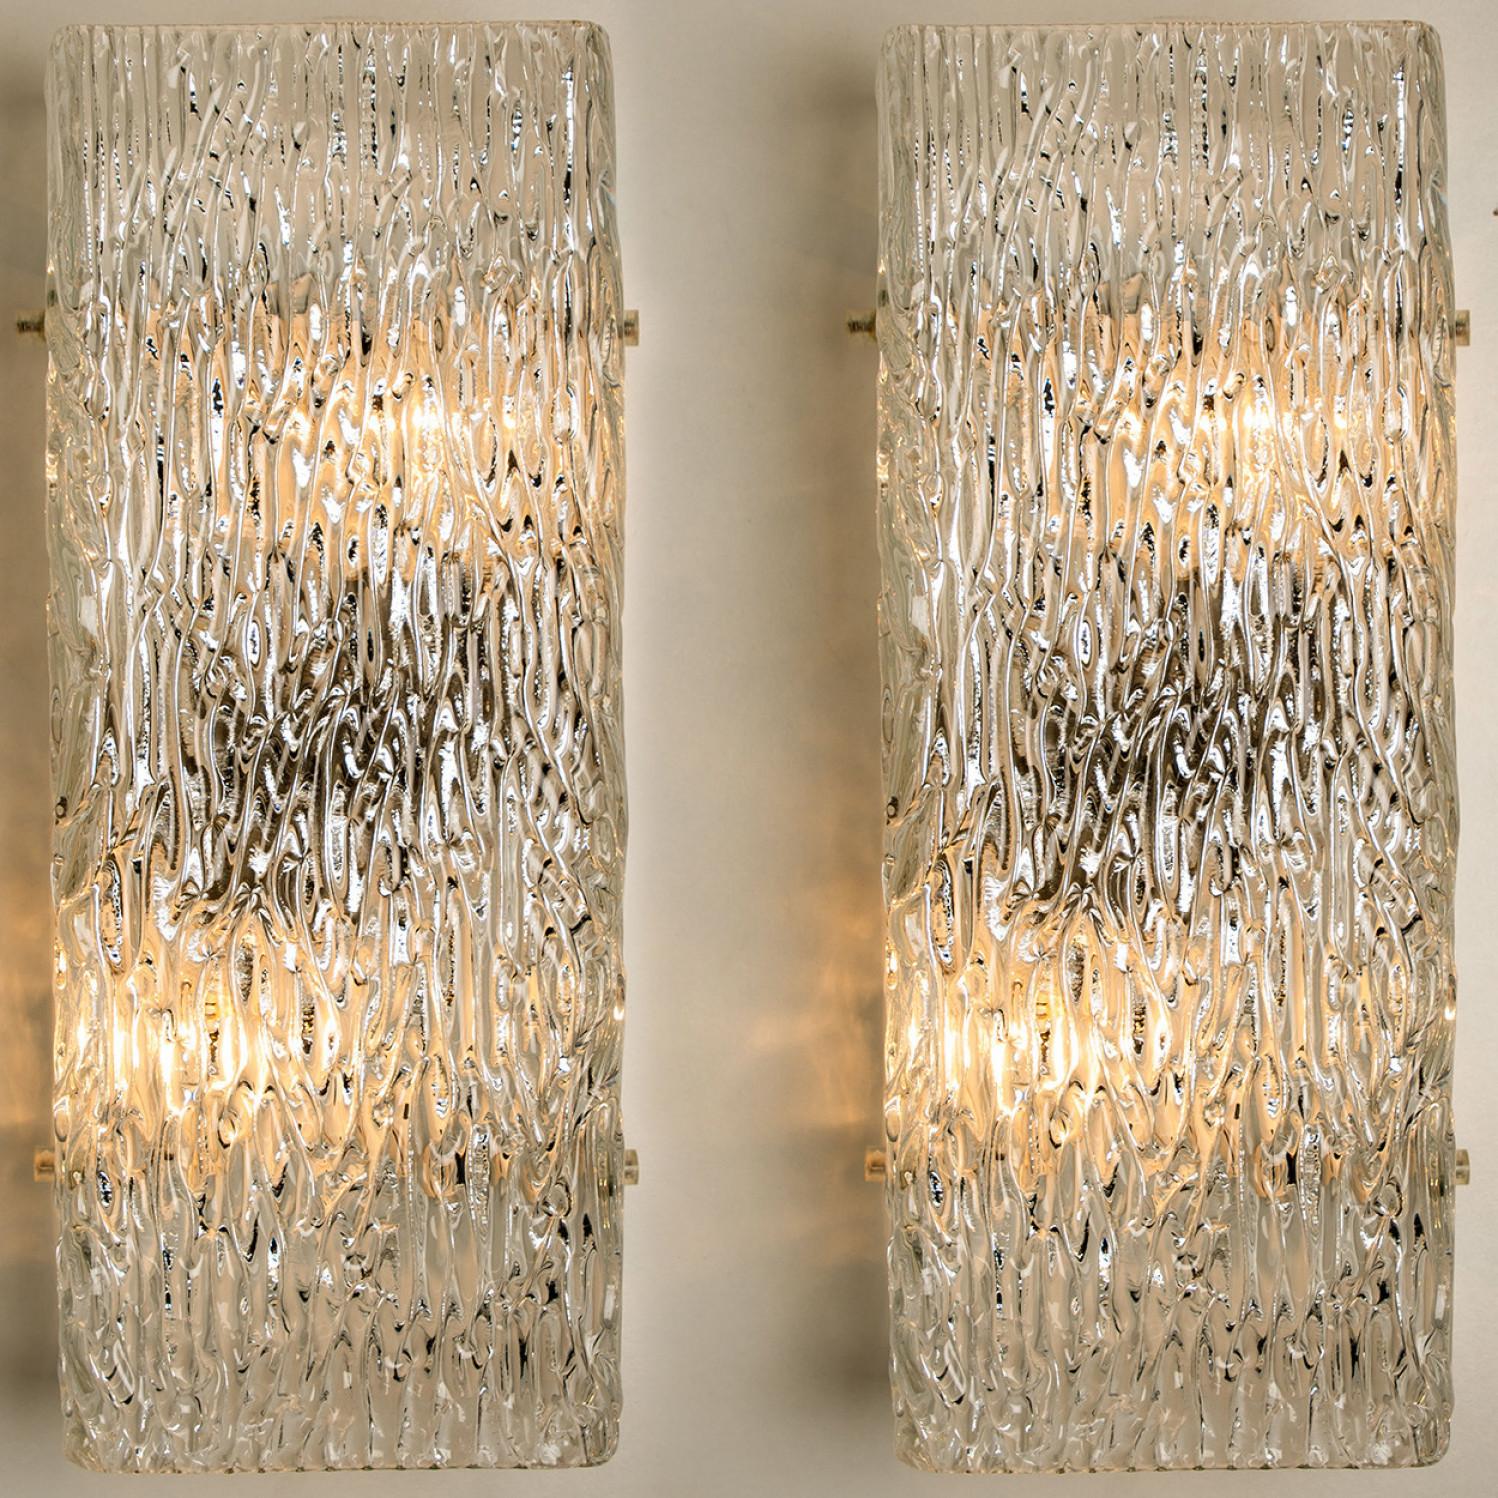 Eine der beiden Beleuchtungskörper von J.T. Kalmar, Wien, Österreich, hergestellt ca. 1960. Das Glas weist eine schöne Wellenstruktur auf, die einen diffusen Lichteffekt und ein schönes Muster an Decke, Wänden und Boden erzeugt.
Die stilvolle